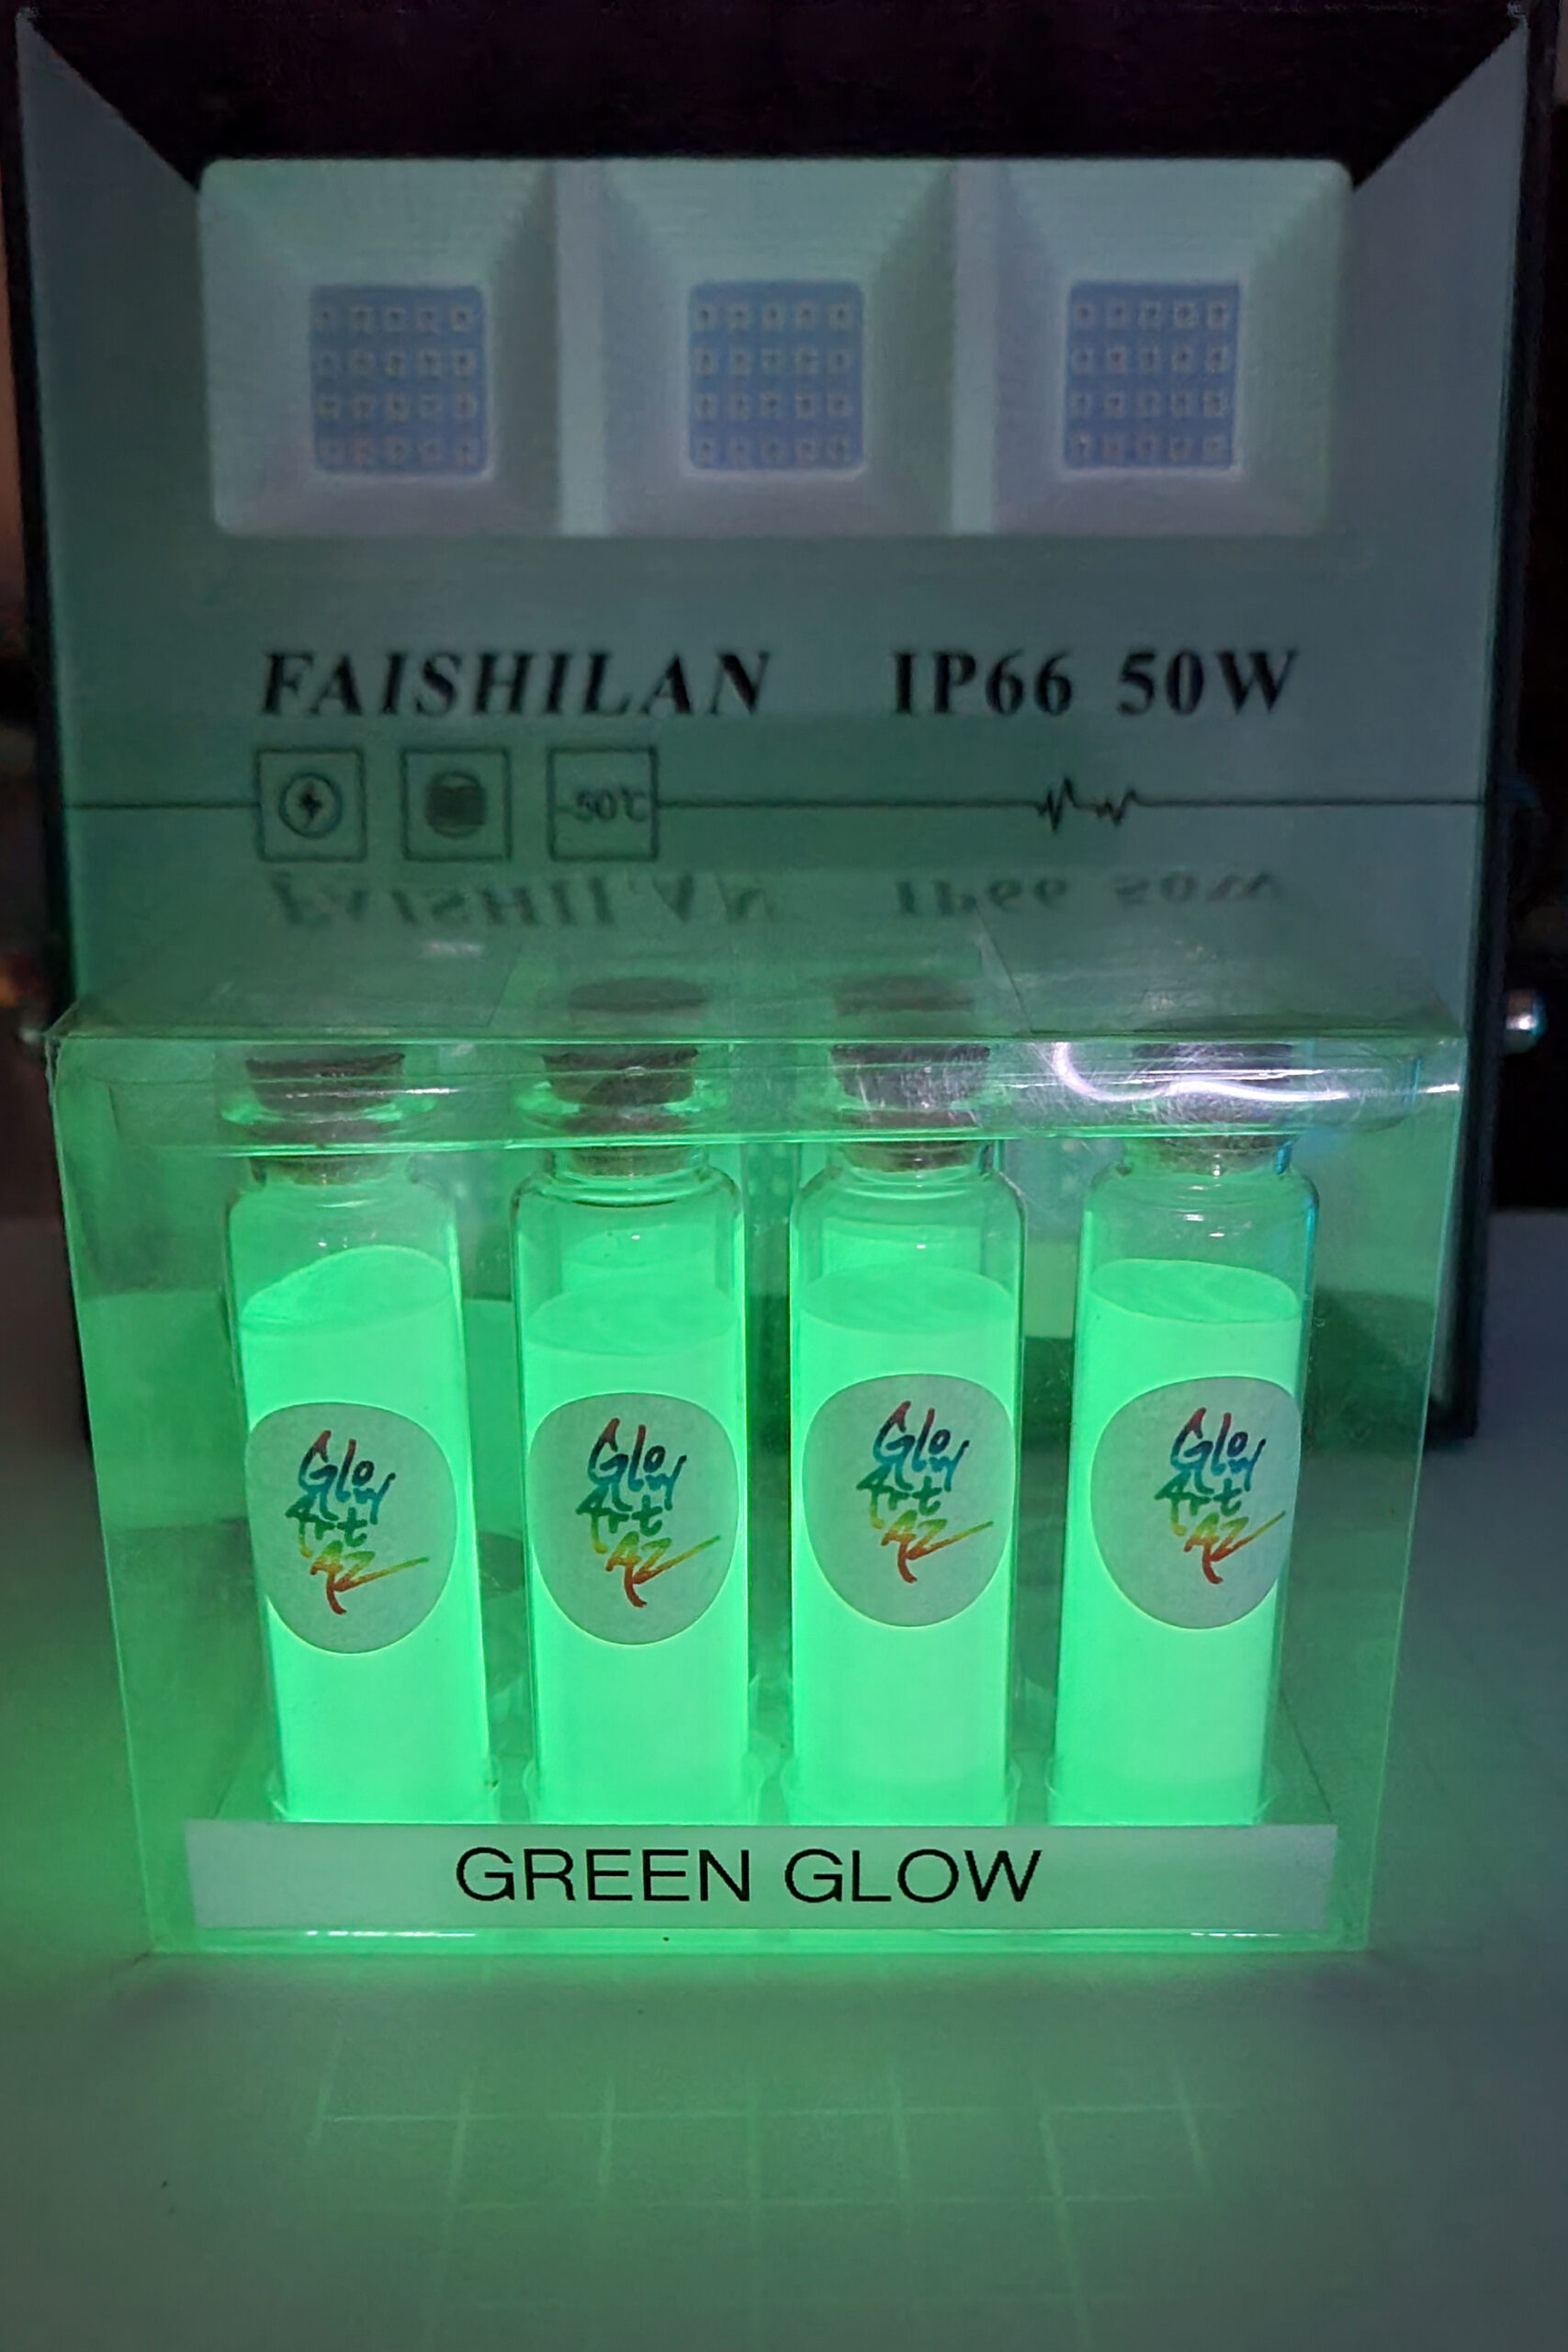 Glow Powder 1oz Triple Green